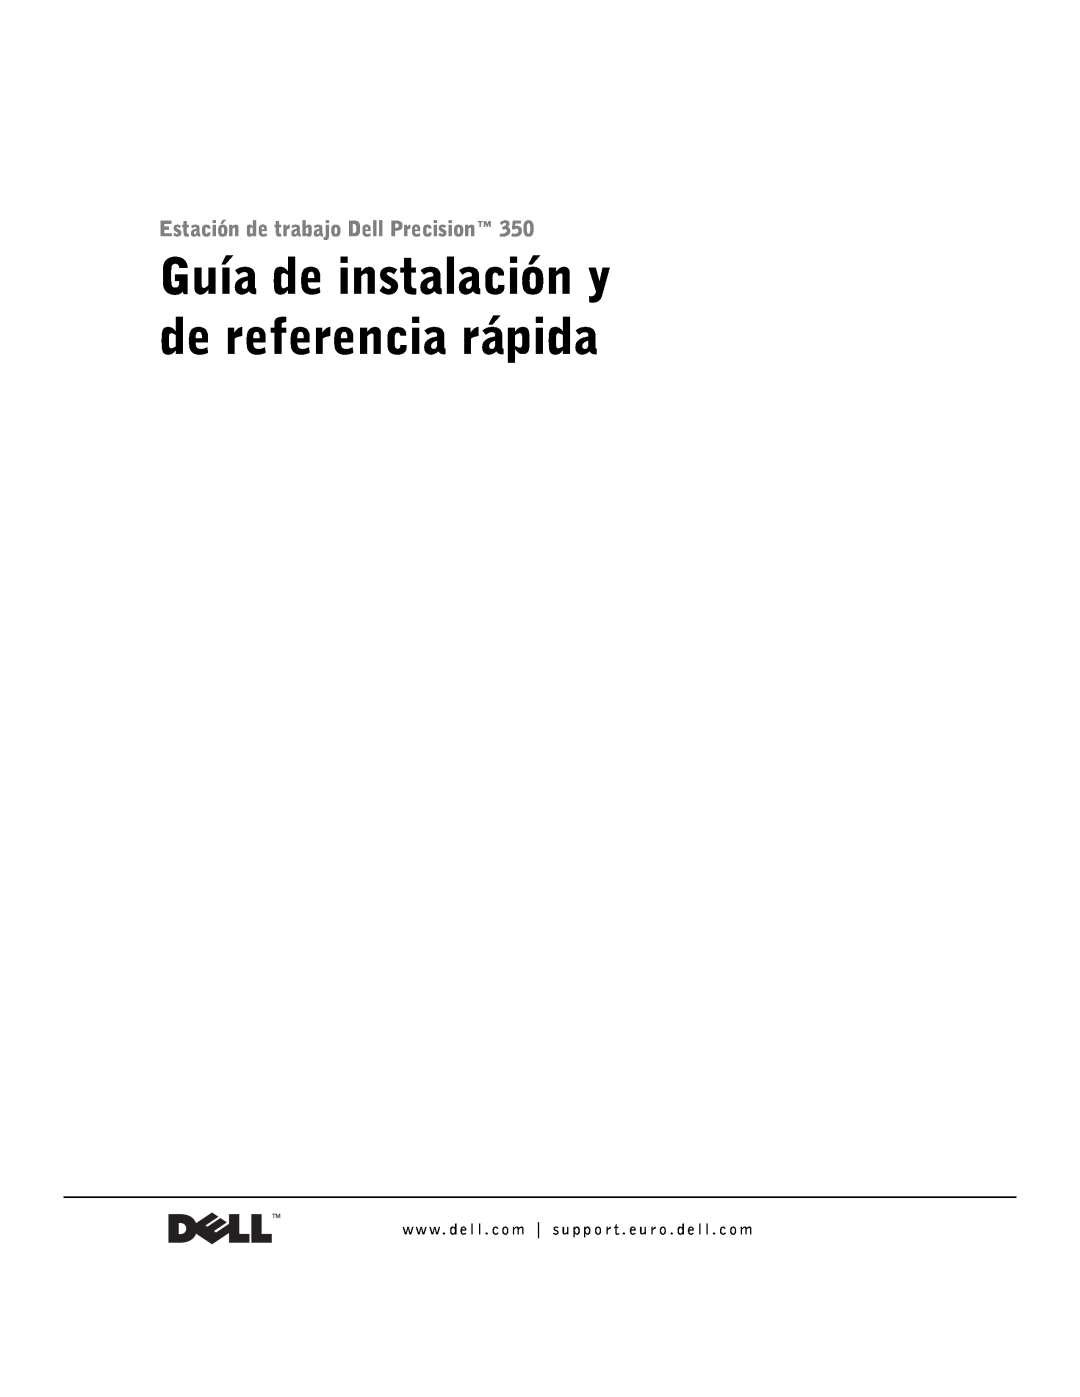 Dell 9T217 manual Guía de instalación y de referencia rápida, Estación de trabajo Dell Precision 